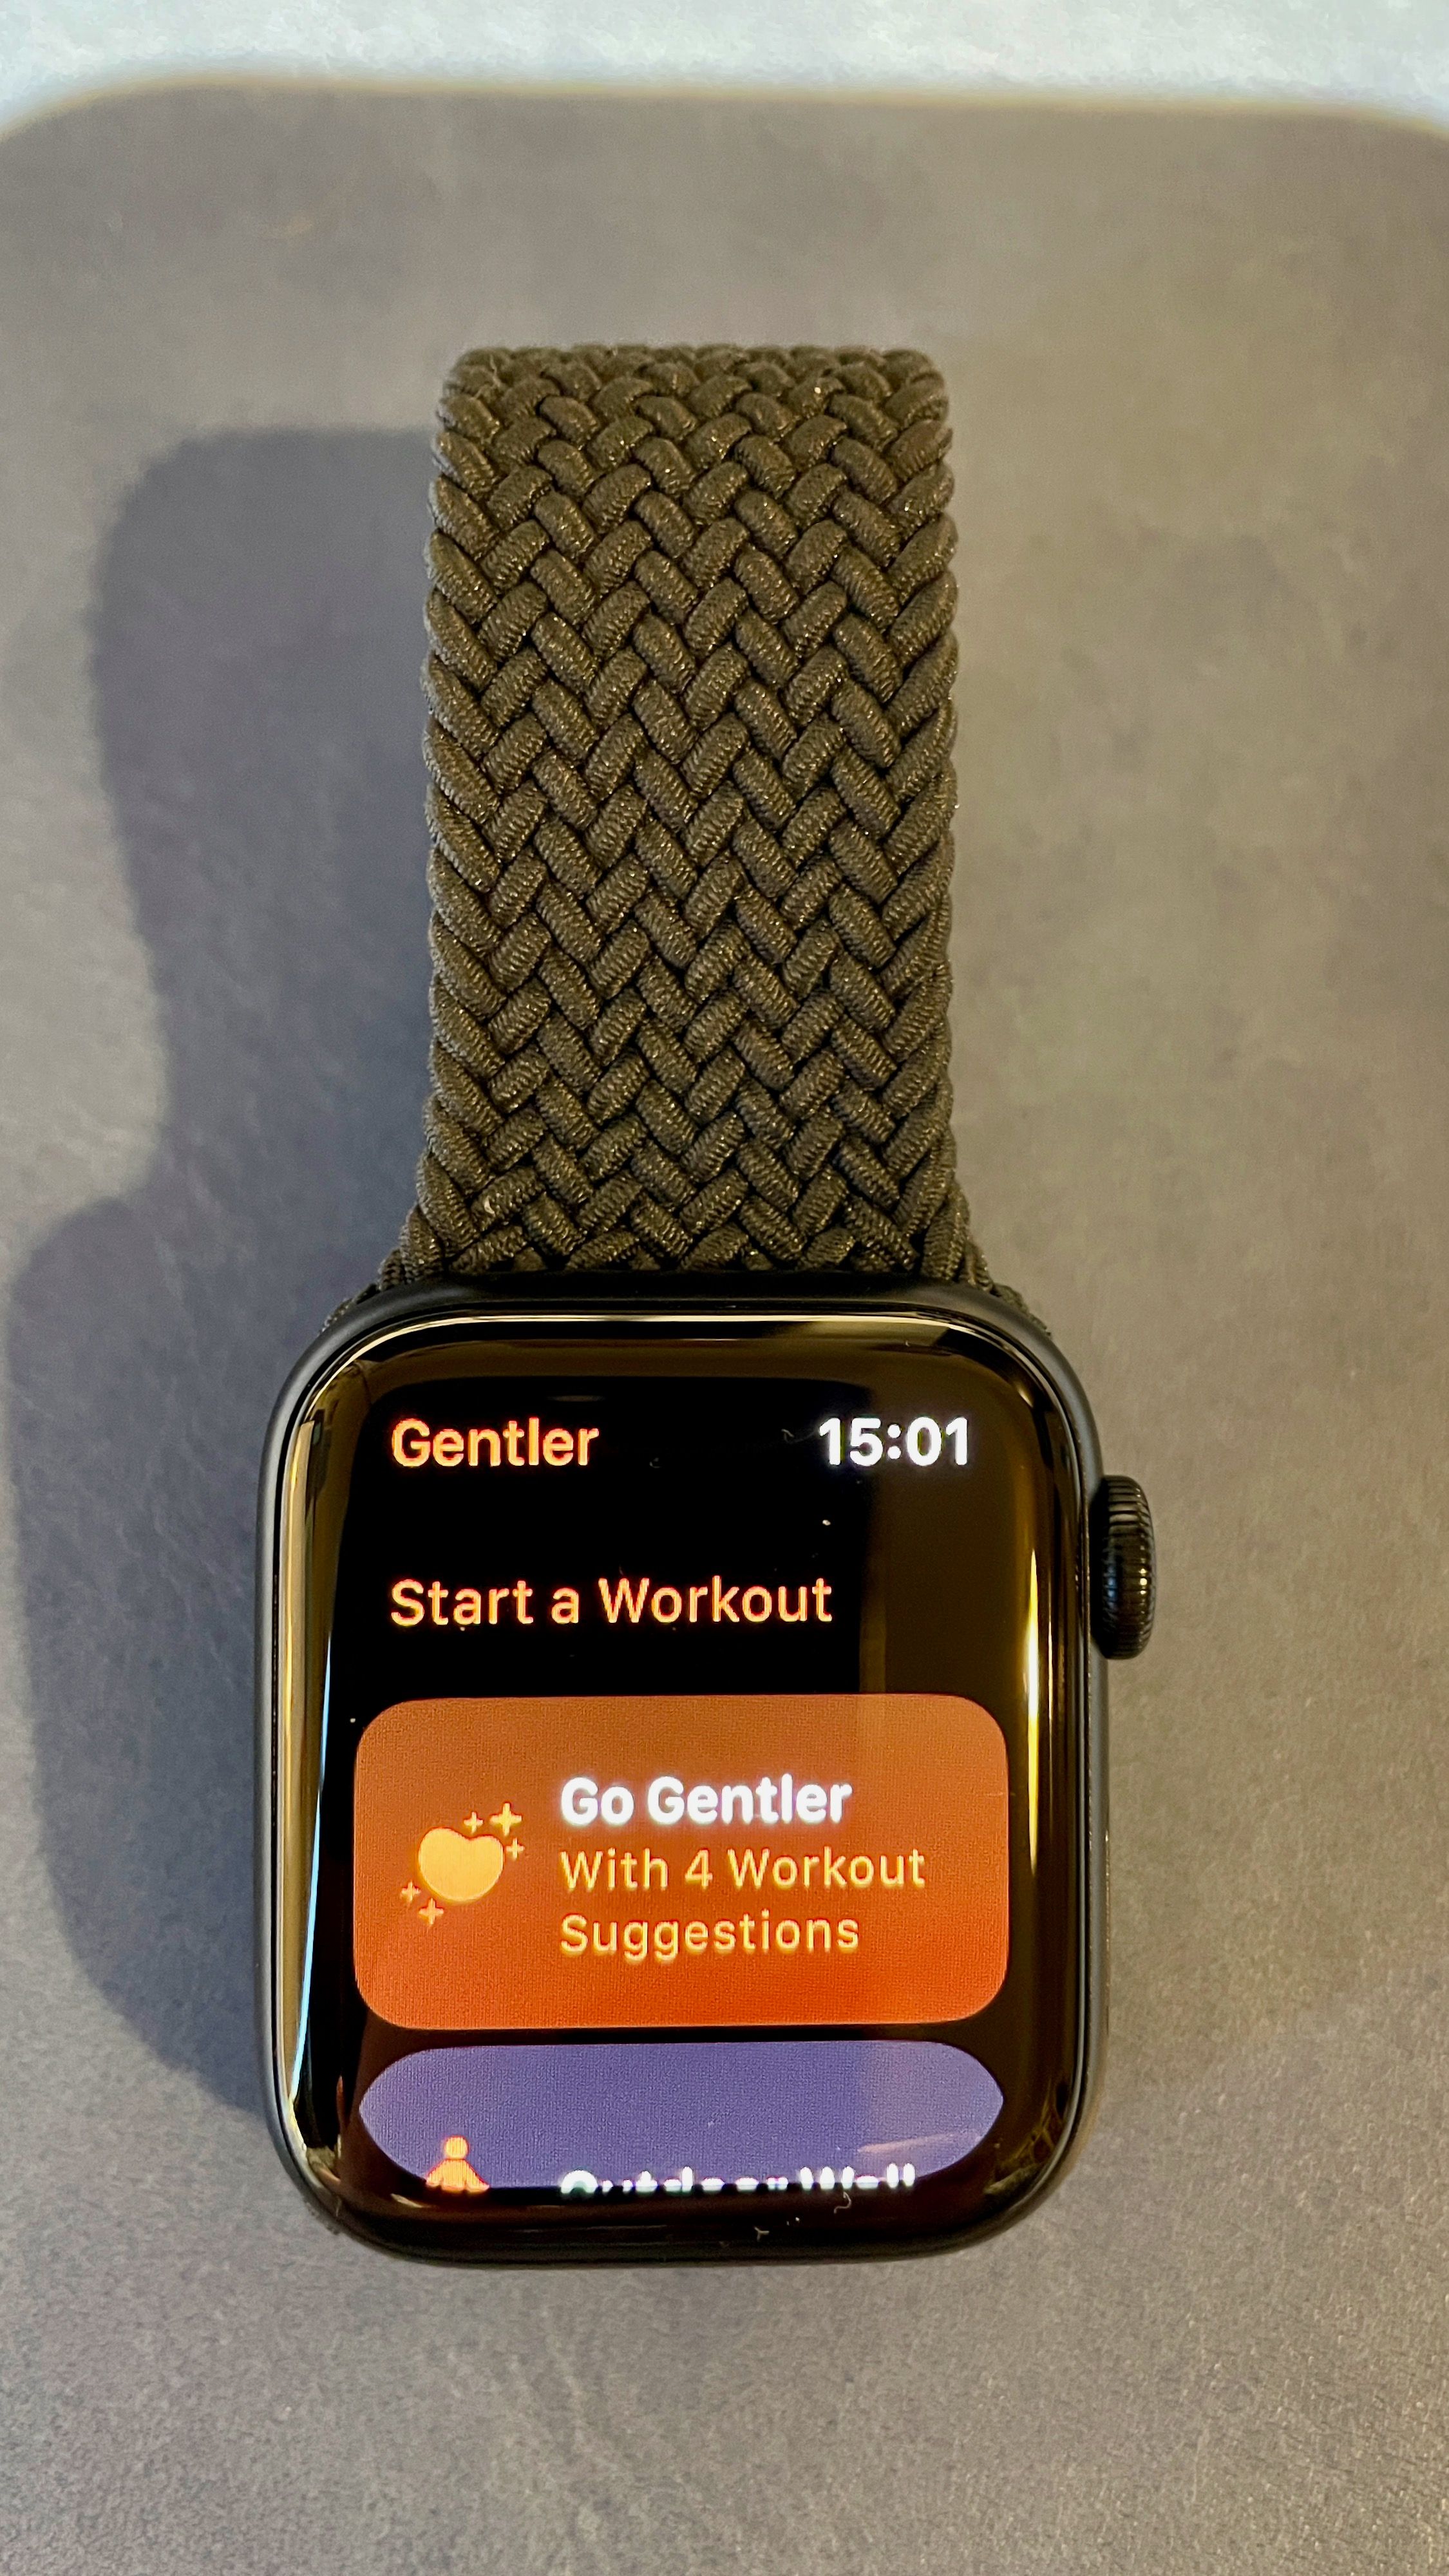 Image of Gentler Streak Apple Watch start Go Gentler workout